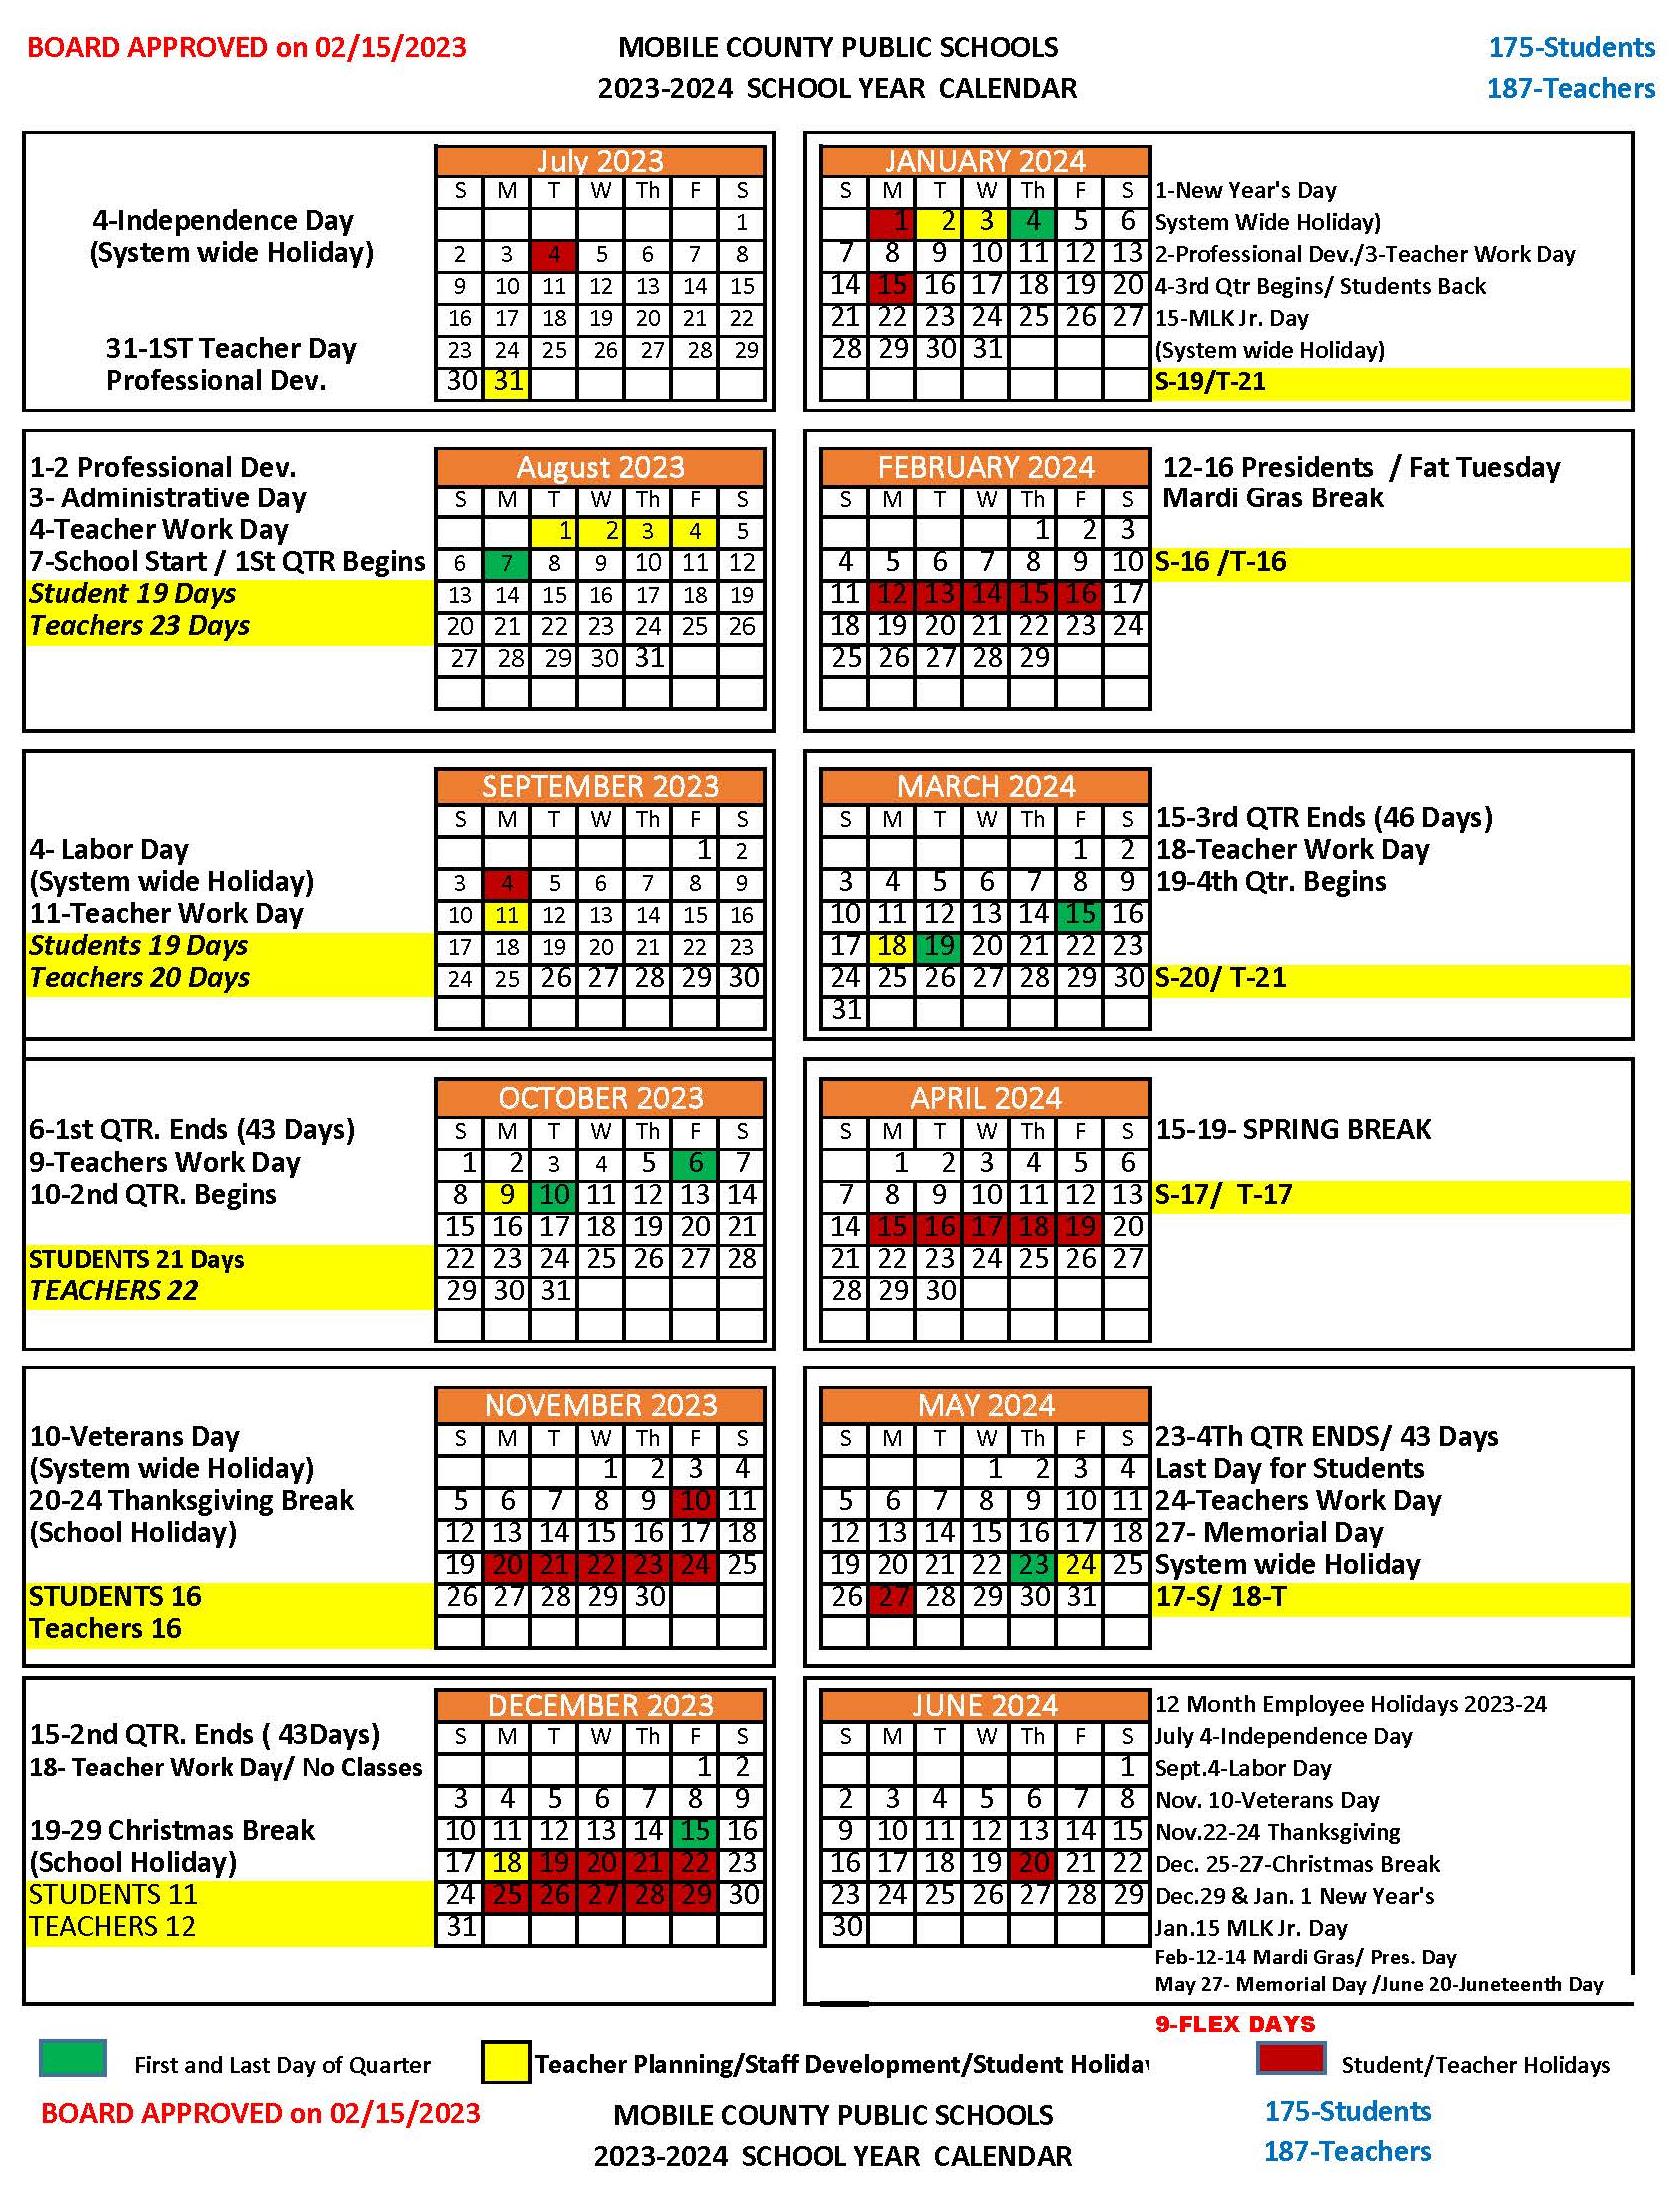 2023-24 MCPSS School Calendar